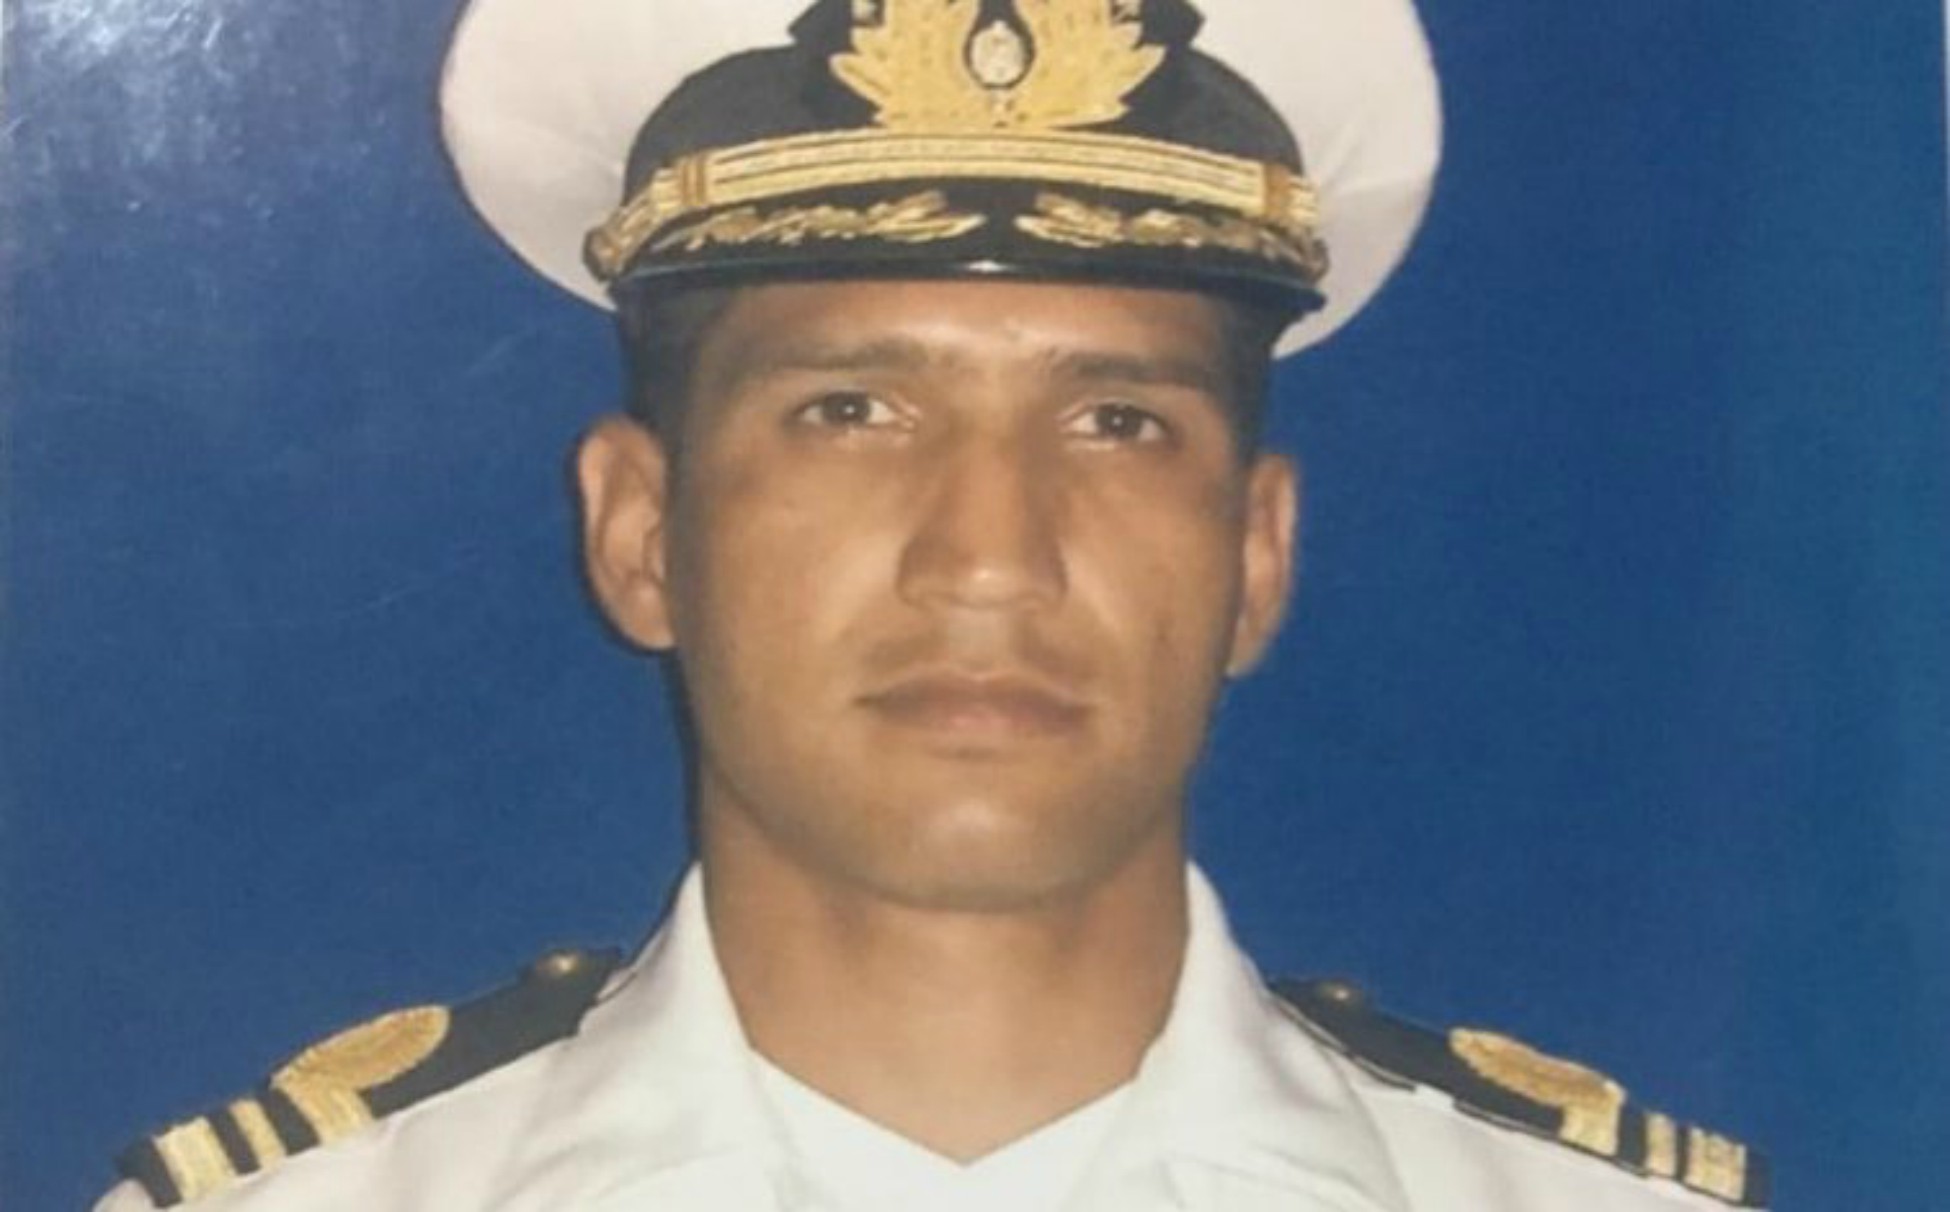 Torturado hasta la muerte: Confirmada razón del fallecimiento del capitán Acosta Arévalo